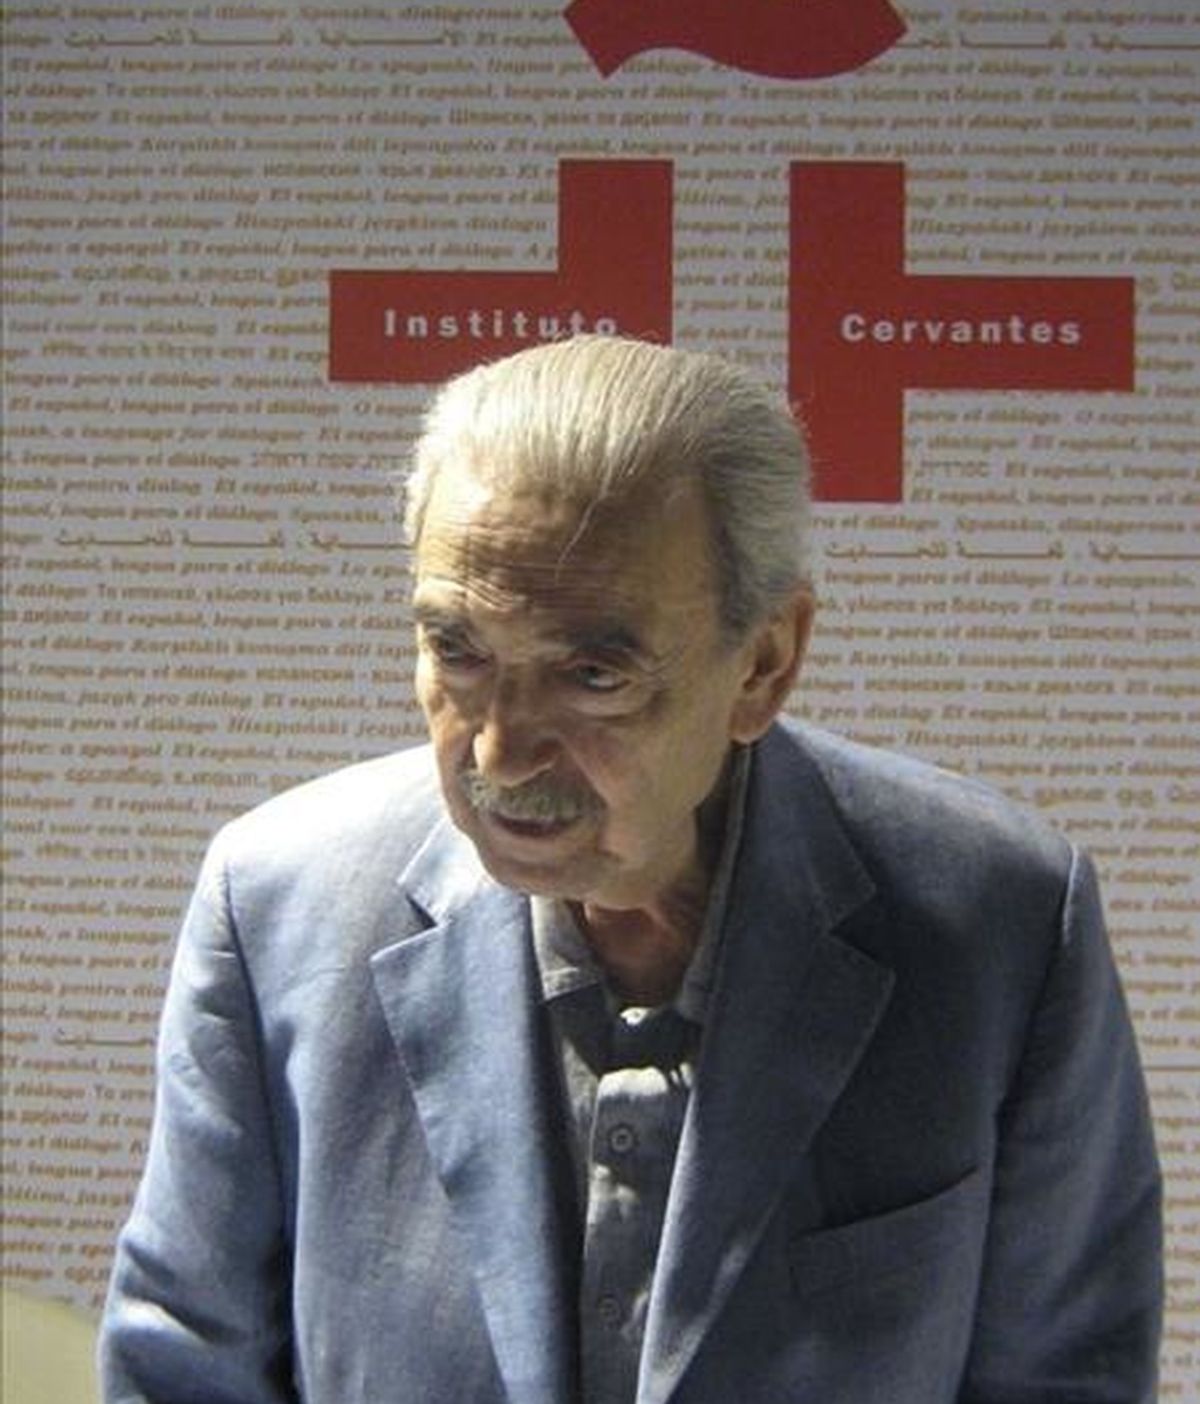 El poeta argentino Juan Gelman durante el recital poético que ofreció en la sede del Instituto Cervantes de Nueva Delhi hace unos días. EFE/Archivo